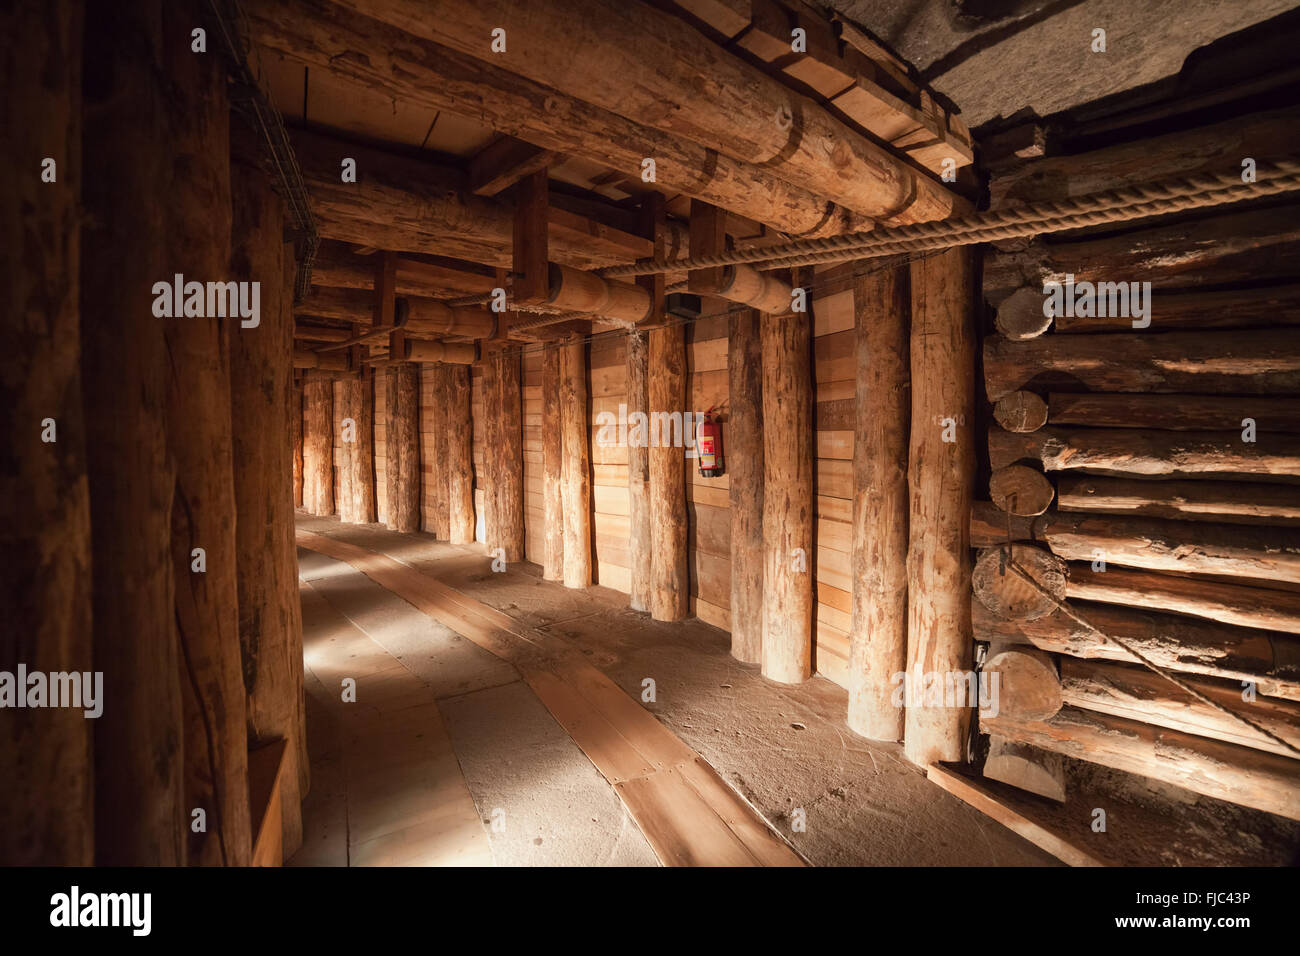 Poland, Wieliczka Salt Mine, underground corridor with wooden support Stock Photo